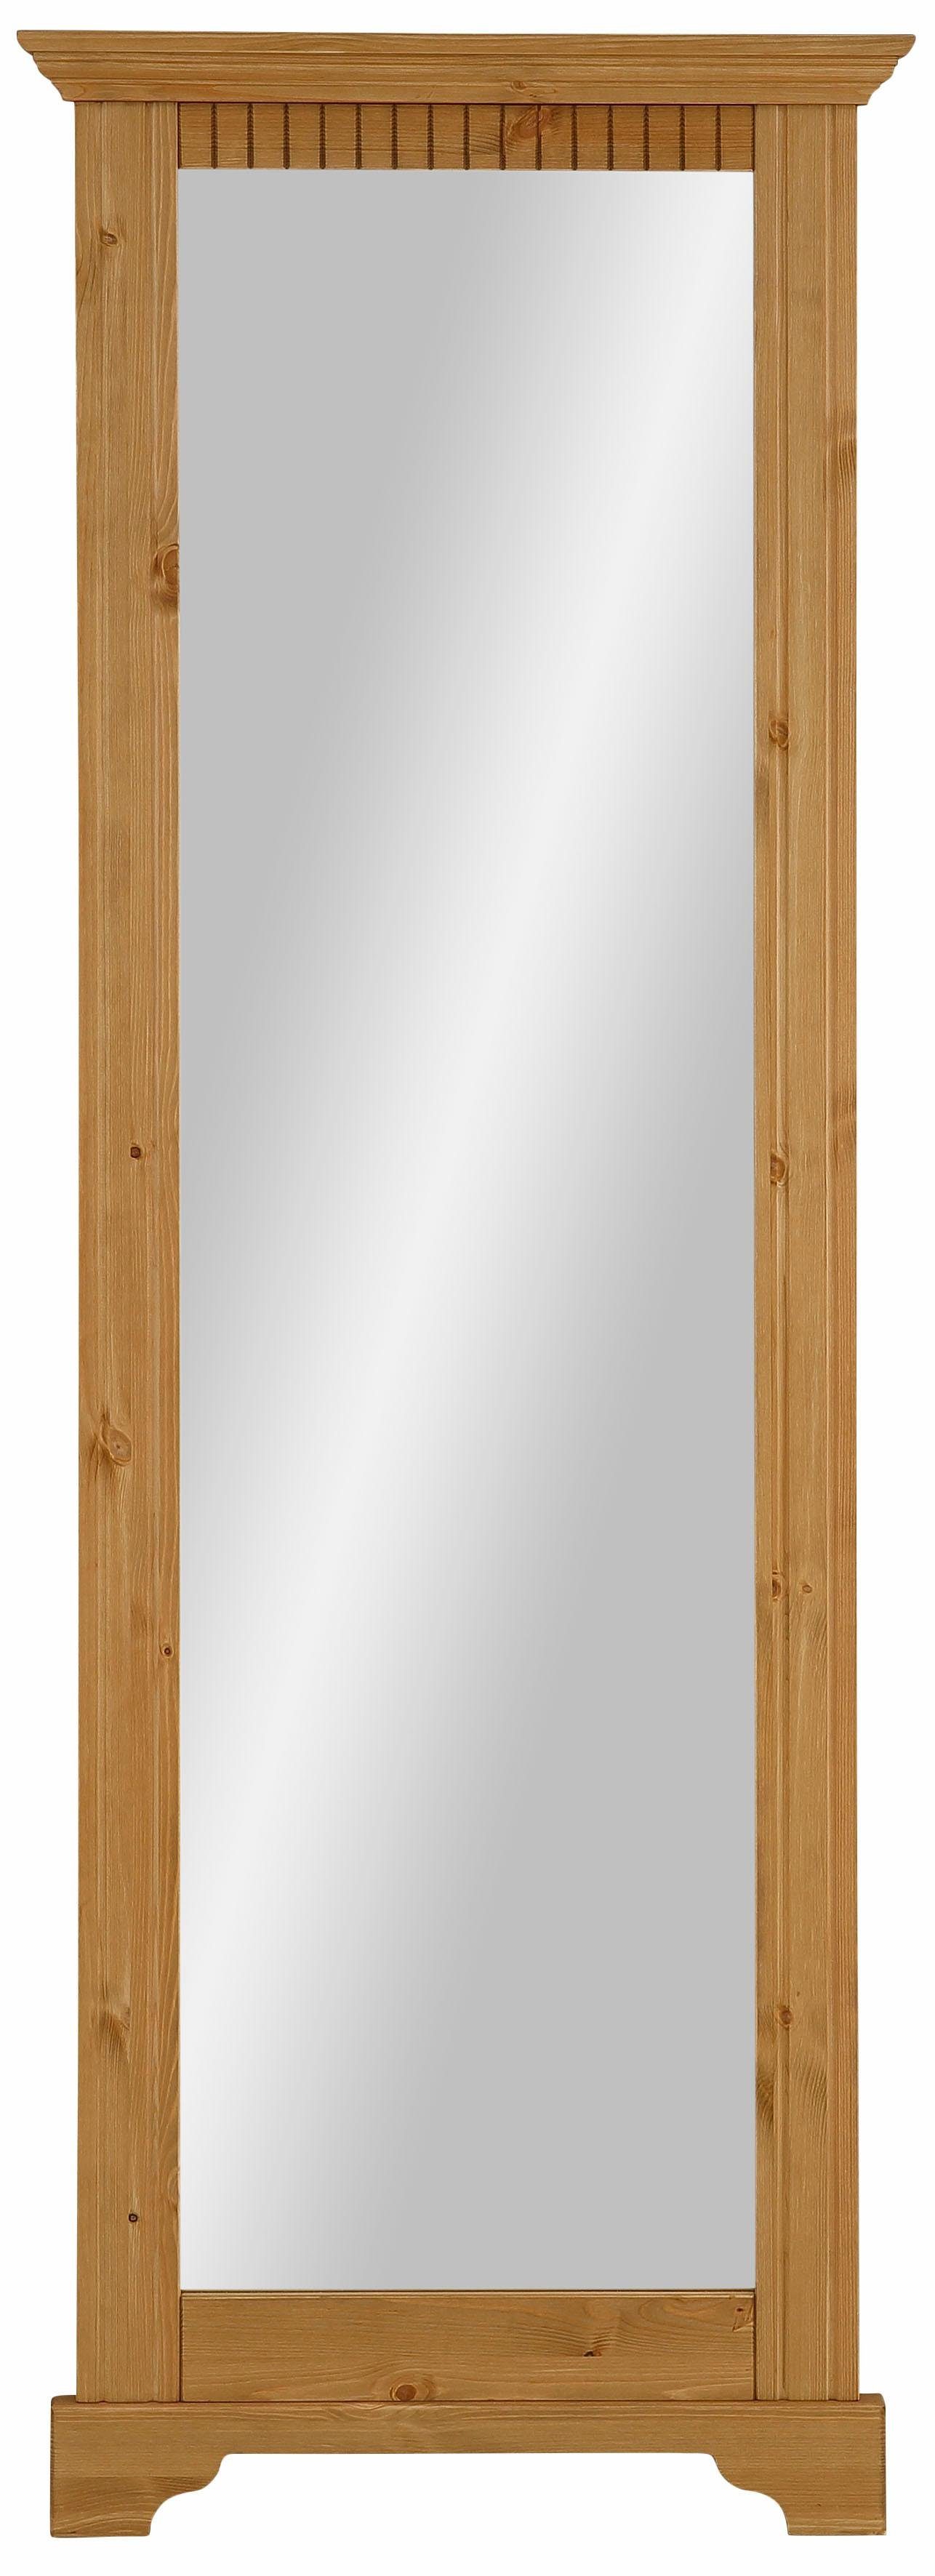 Flur-Spiegel 90x120cm Landhausstil Kiefer gelaugt geölt Wandspiegel mit Ablage 